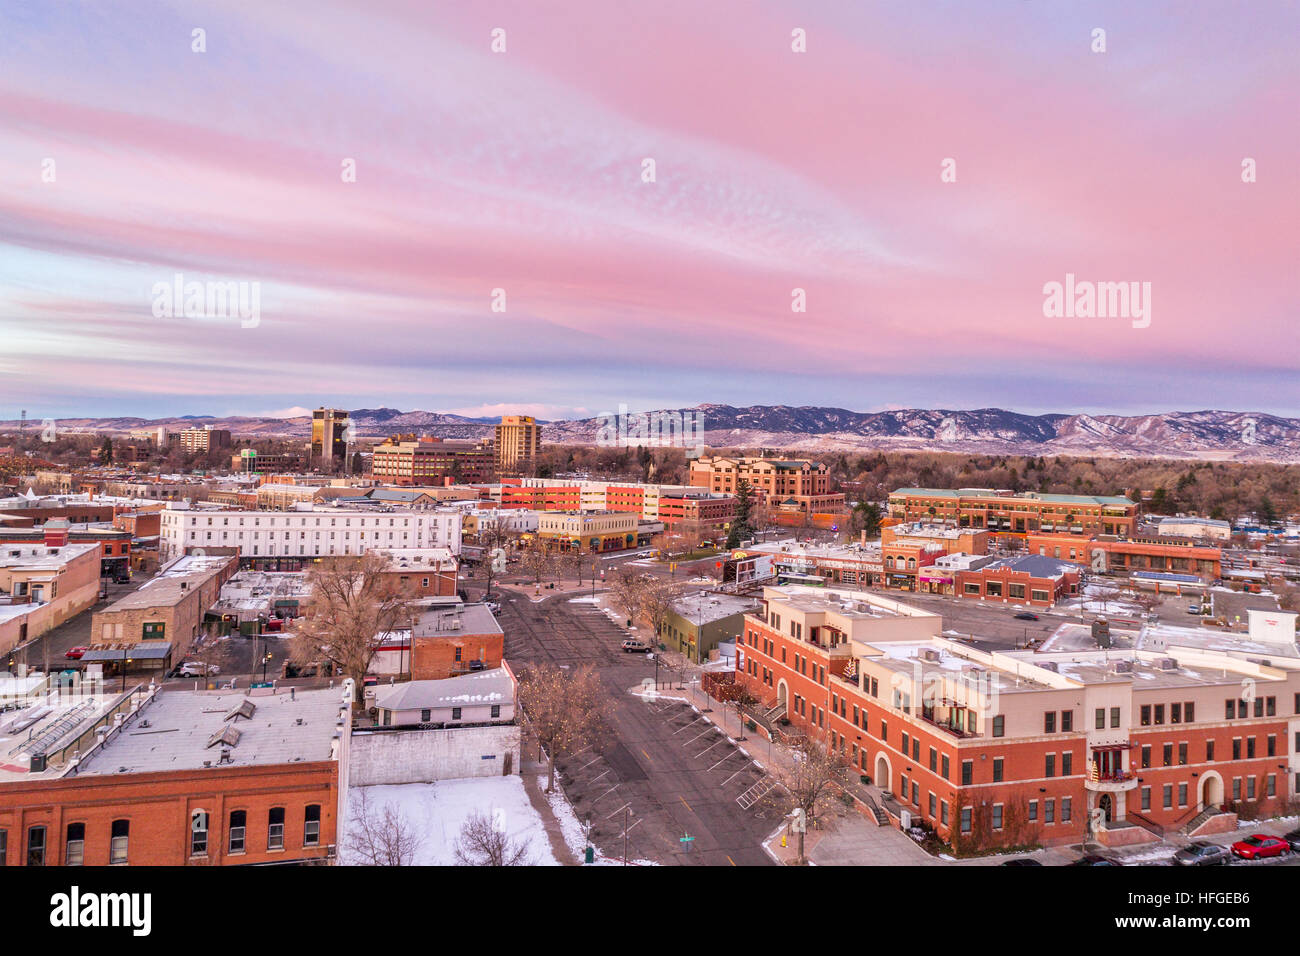 FORT COLLINS, CO, USA - Le 13 décembre 2016 : le centre-ville de Fort Collins, Colorado, à l'aube d'hiver froid - vue aérienne avec des lumières de Noël et Rocky Mountain Banque D'Images